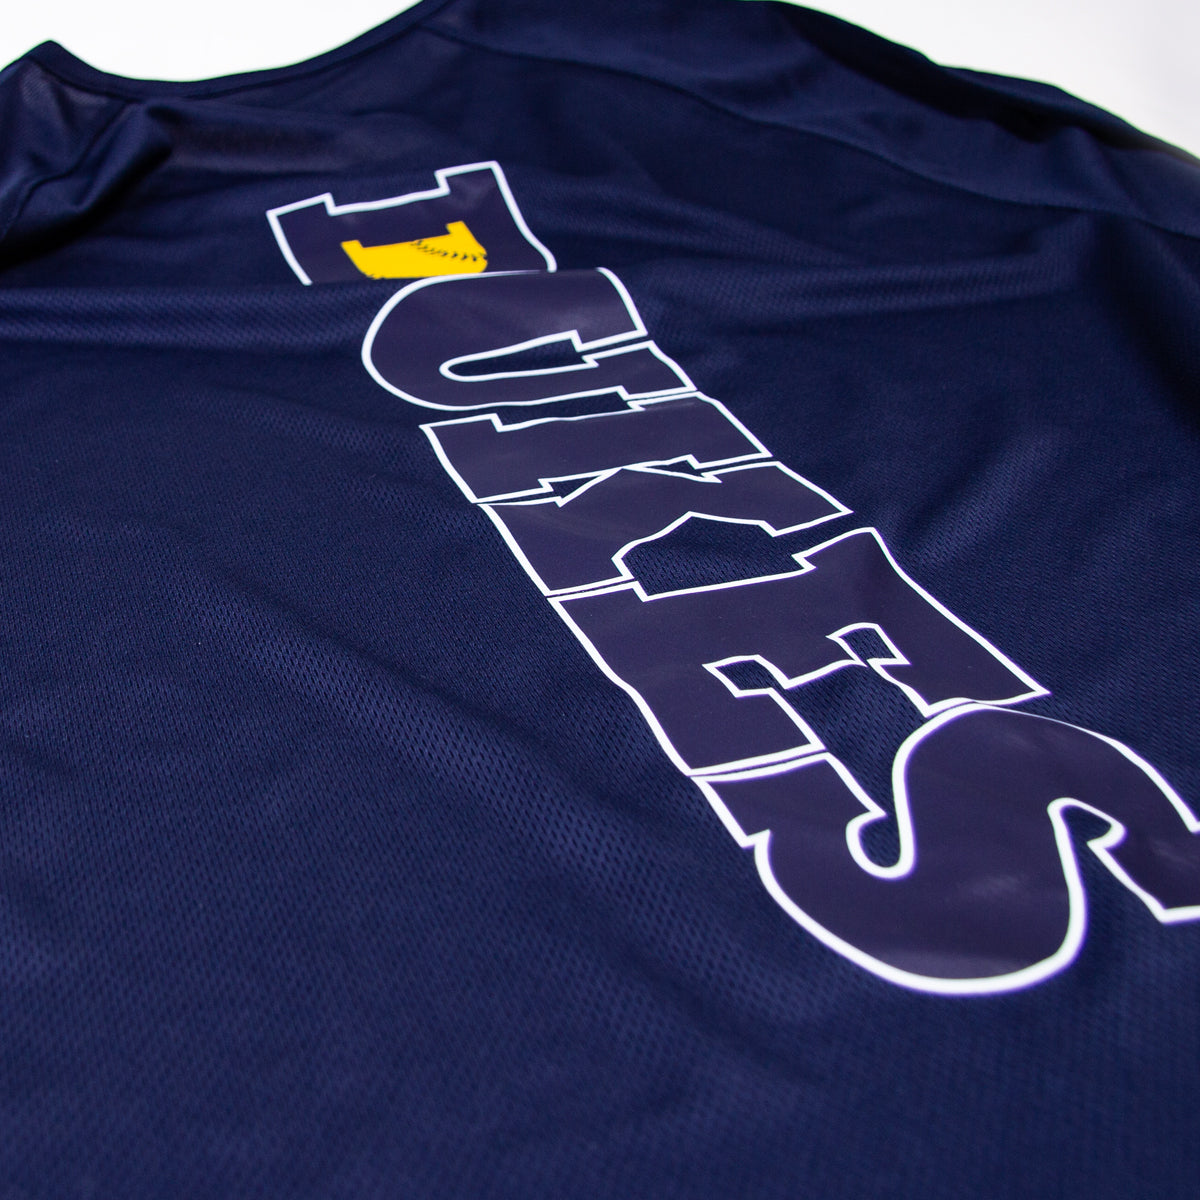 Softball | T-Shirt Unisex in 2 Farben – DUKES vertikal #1